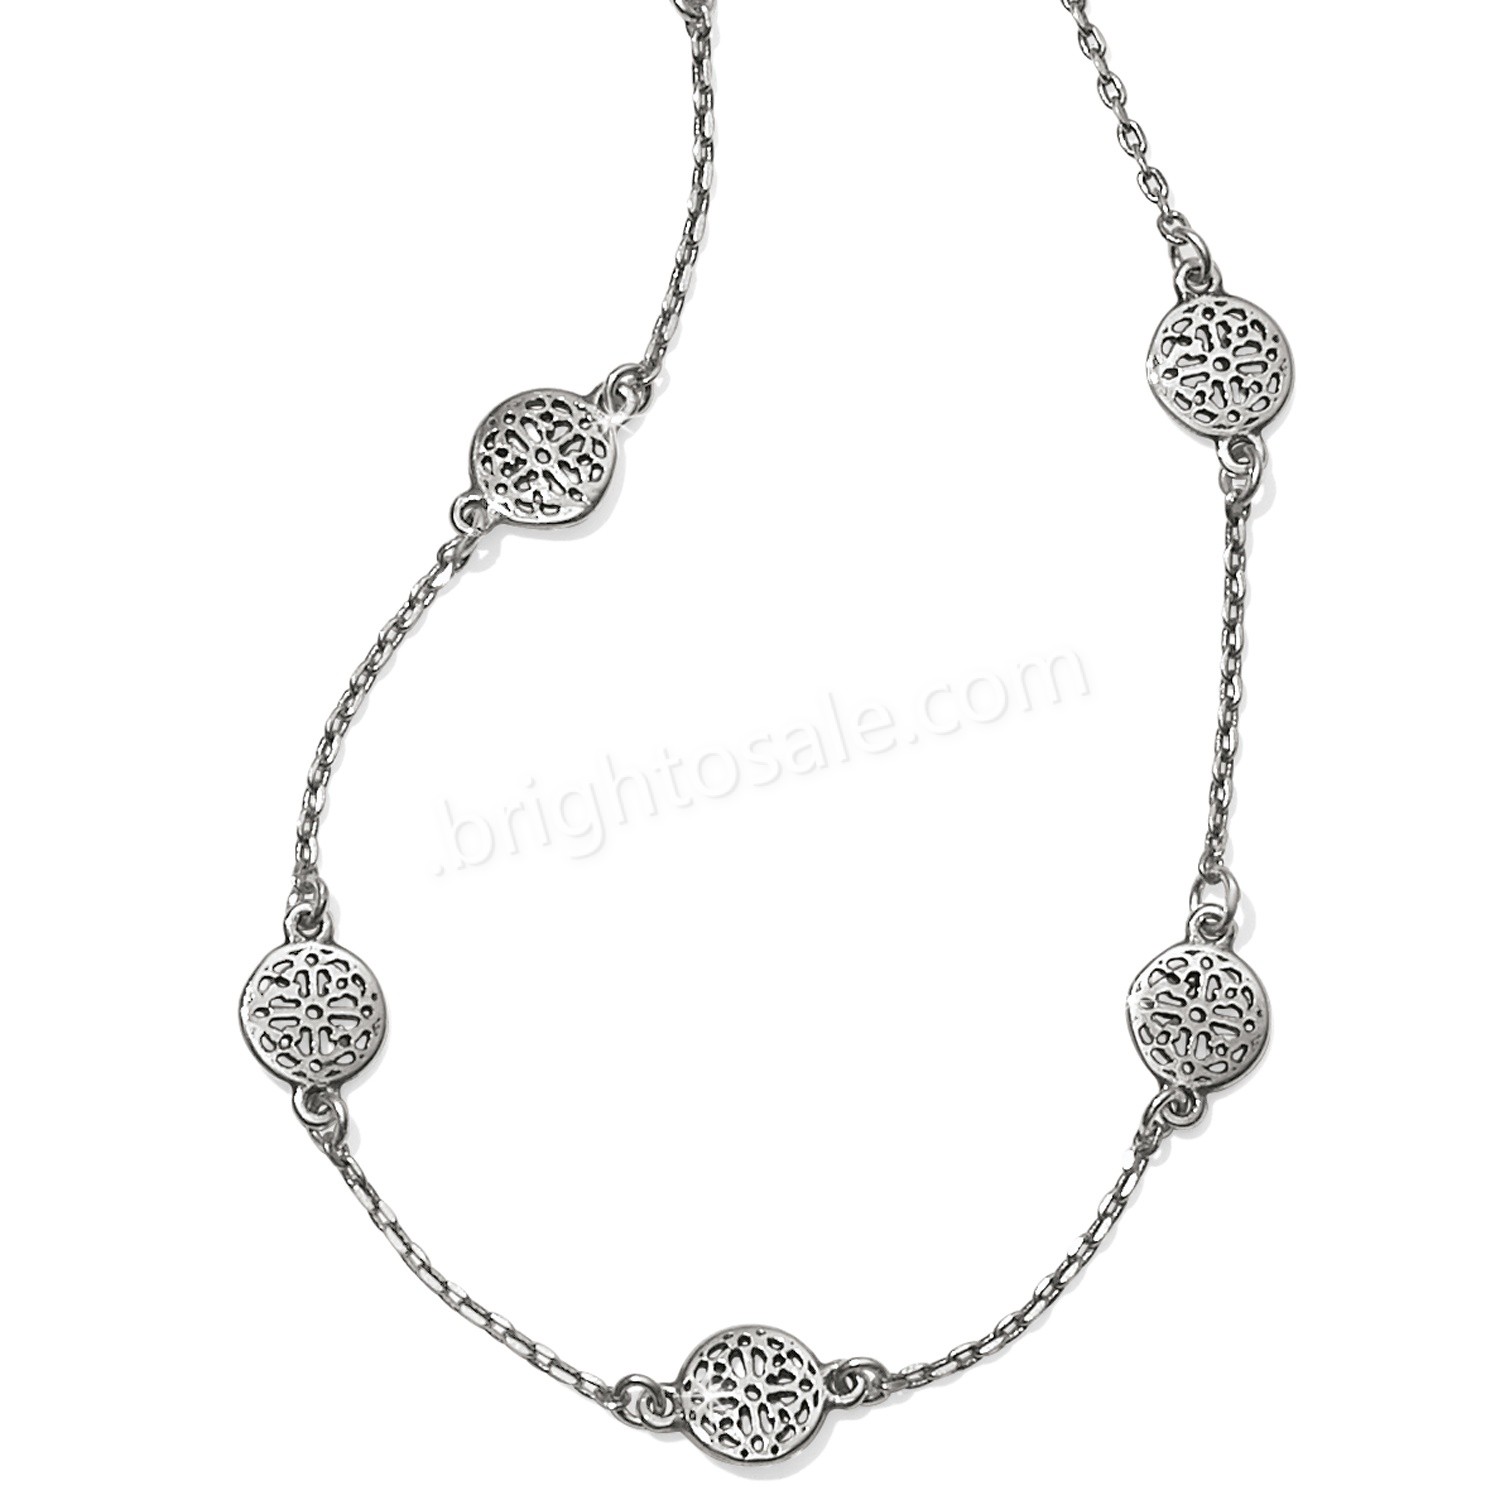 Brighton Collectibles & Online Discount Alcazar Love Necklace - Brighton Collectibles & Online Discount Alcazar Love Necklace